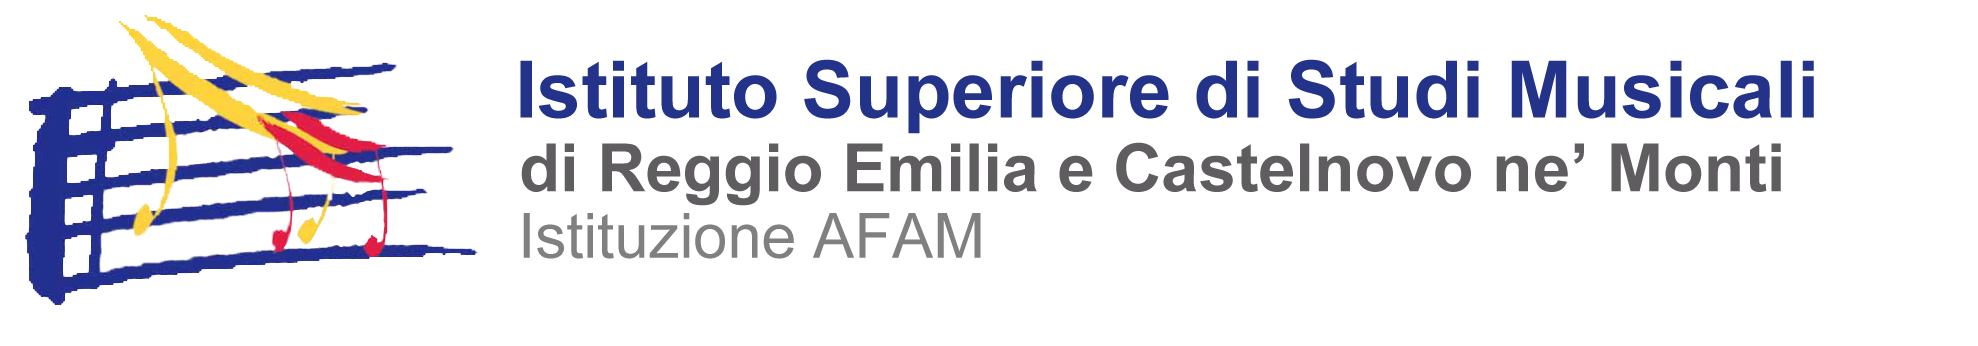 Logo Istituto Superiore di Studi Musicali di Reggio Emilia e Castelnovo ne' Monti